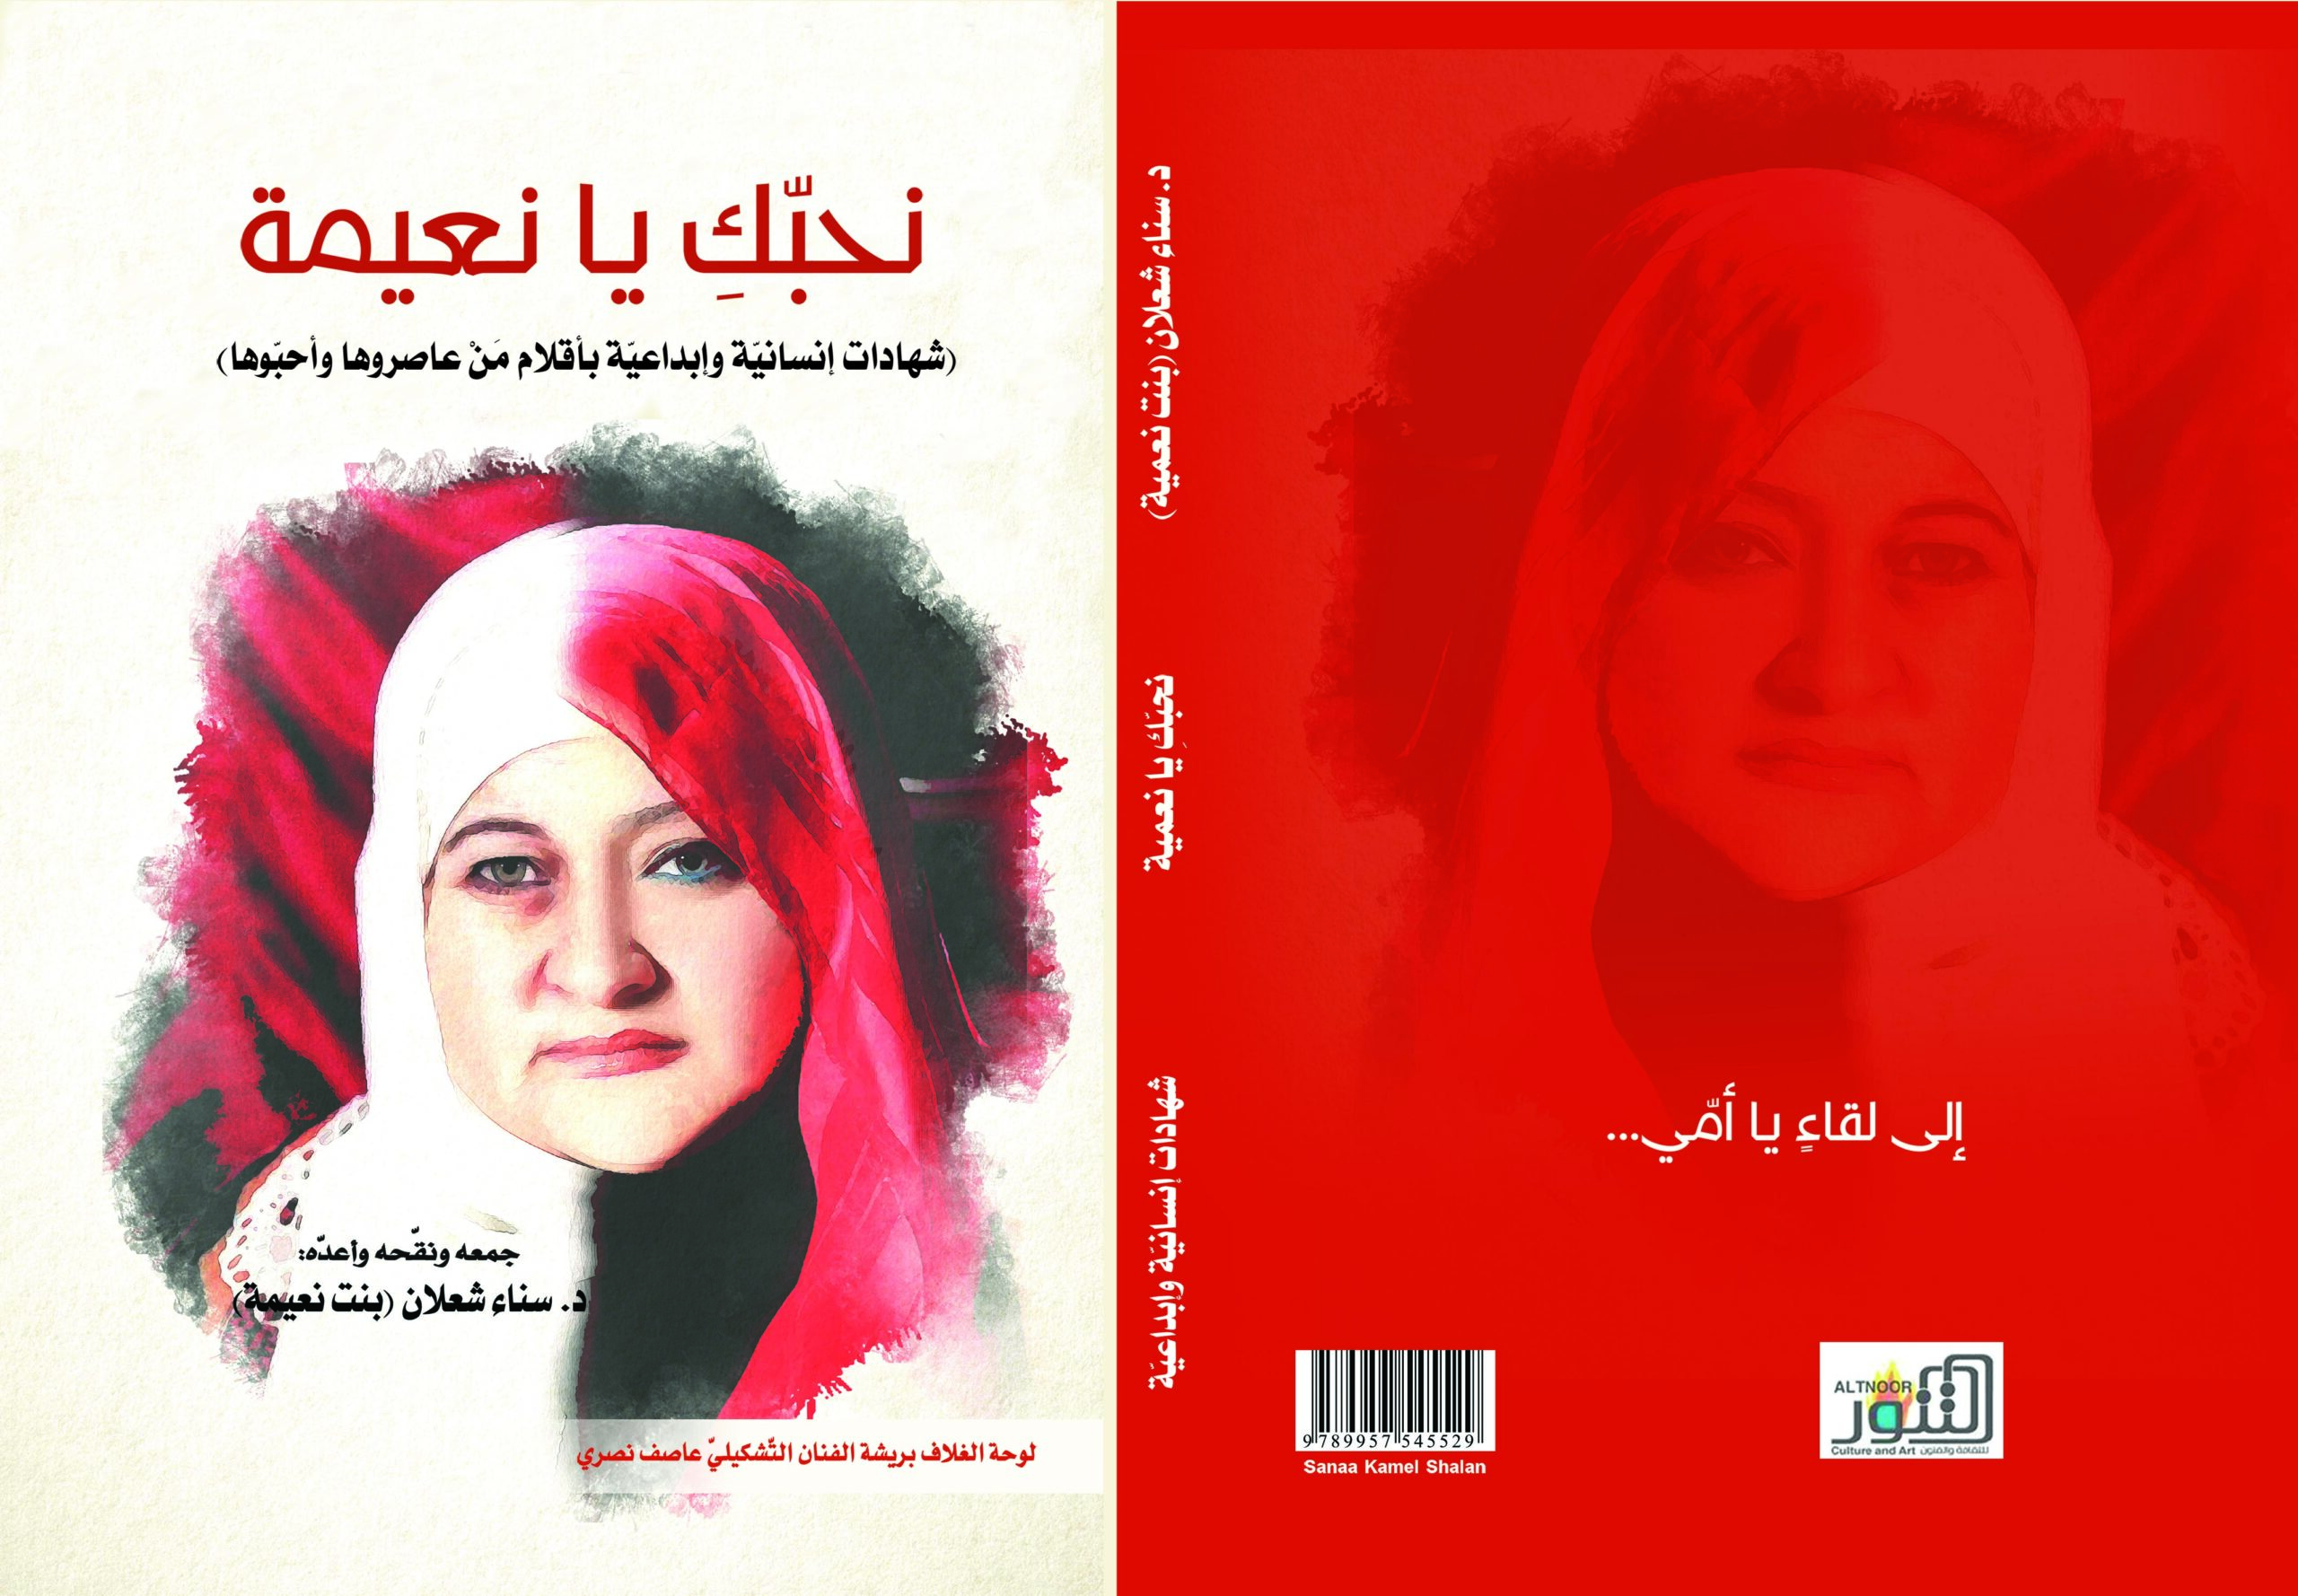 "التنّور" الثّقافيّ" يصدر كتاب "نحبّكِ يا نعيمة" في الذّكرى السّنويّة الأولى لرحيلها